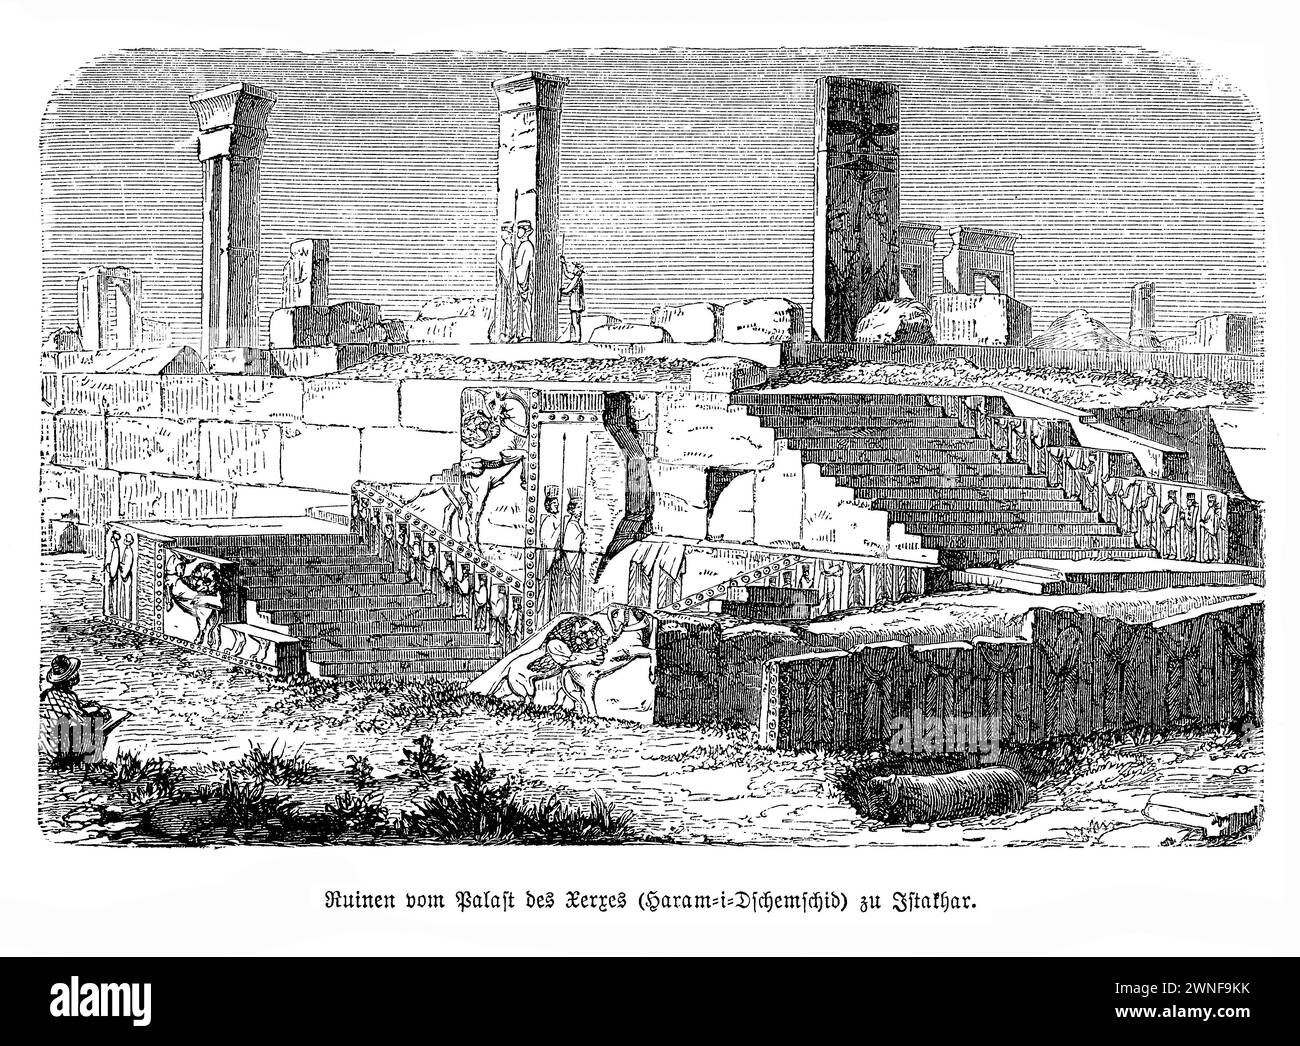 Der Palast von Xerxes Ruinen in Persepolis. Inmitten der antiken Pracht von Persepolis stehen die Ruinen des Palastes von Xerxes als eindringliche Erinnerung an die Macht und den architektonischen Einfallsreichtum des Achämenidenreiches. Einst das Herz eines weitläufigen Komplexes, der den Ruhm von Xerxes dem Großen demonstrieren sollte, liegen diese Ruinen nun still, ihre Steine flüstern Geschichten von vergangener Pracht und feierlichen Zeremonien. Der Palast mit seinen großen Hallen und komplizierten Reliefs war ein Wunder der antiken Ingenieurskunst und spiegelt den weltoffenen Geist seiner Zeit wider. Stockfoto